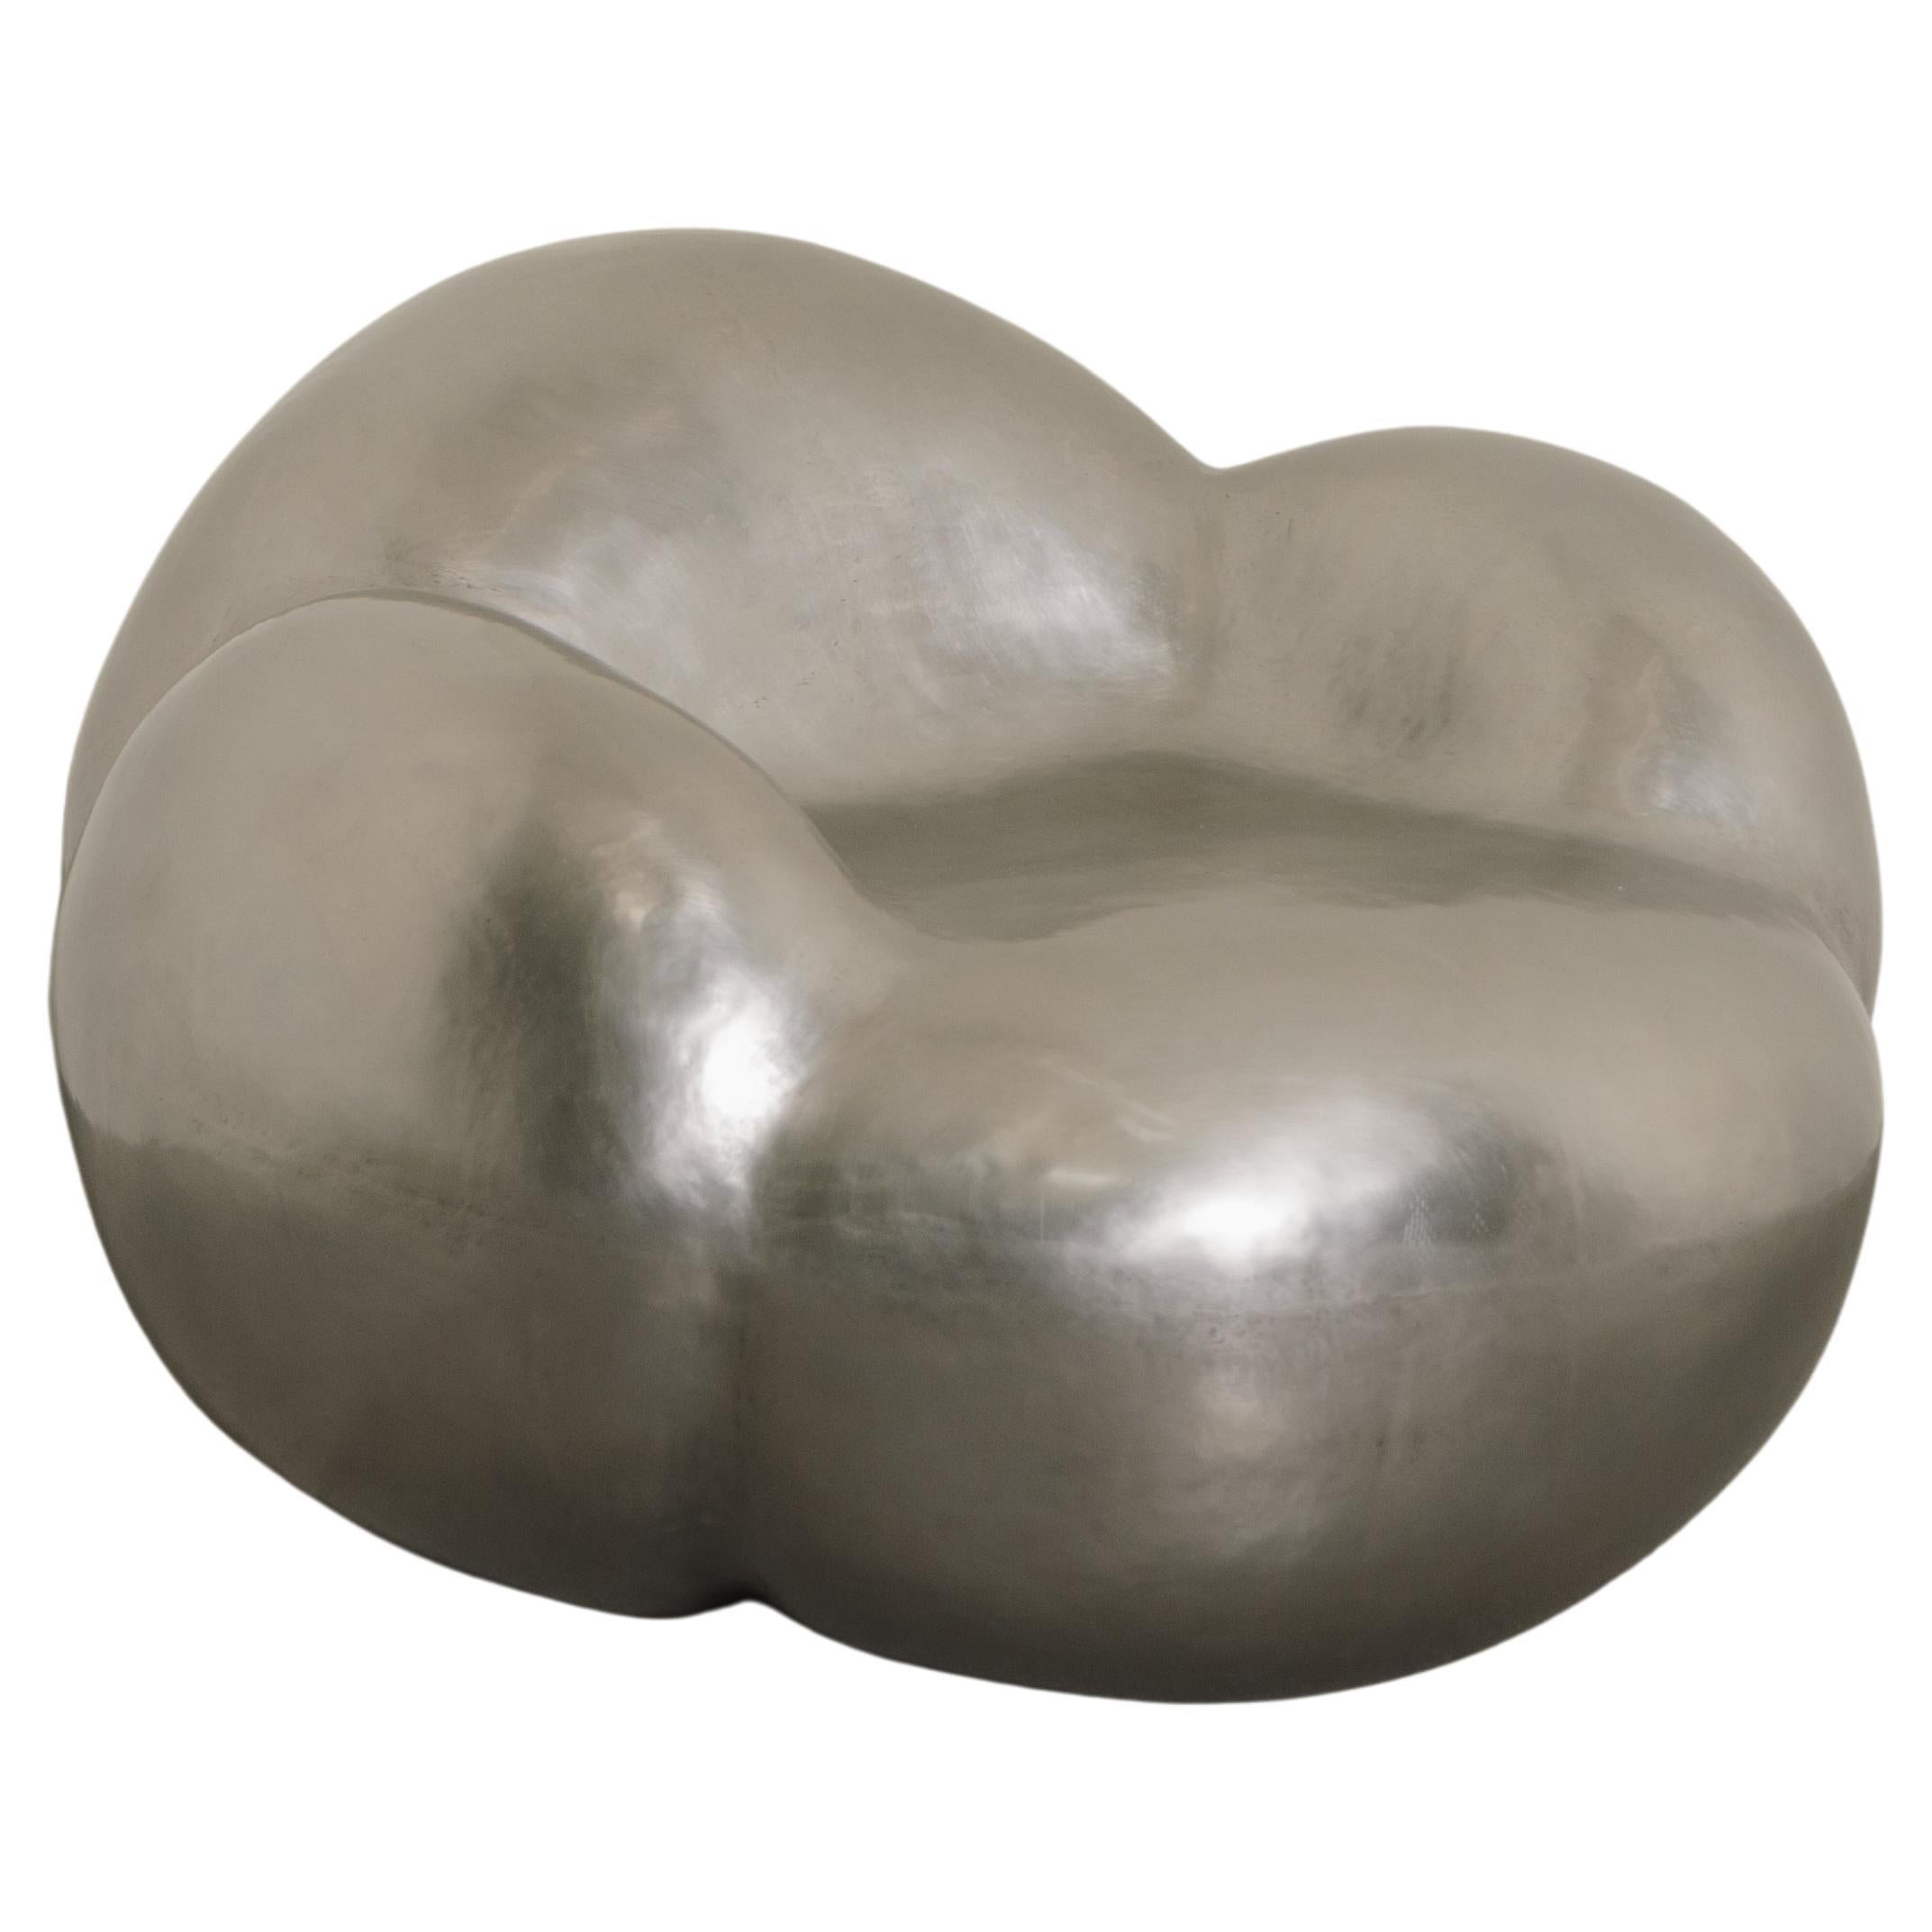 Contemporary Stainless Steel Cloud Chair von Robert Kuo, limitierte Auflage